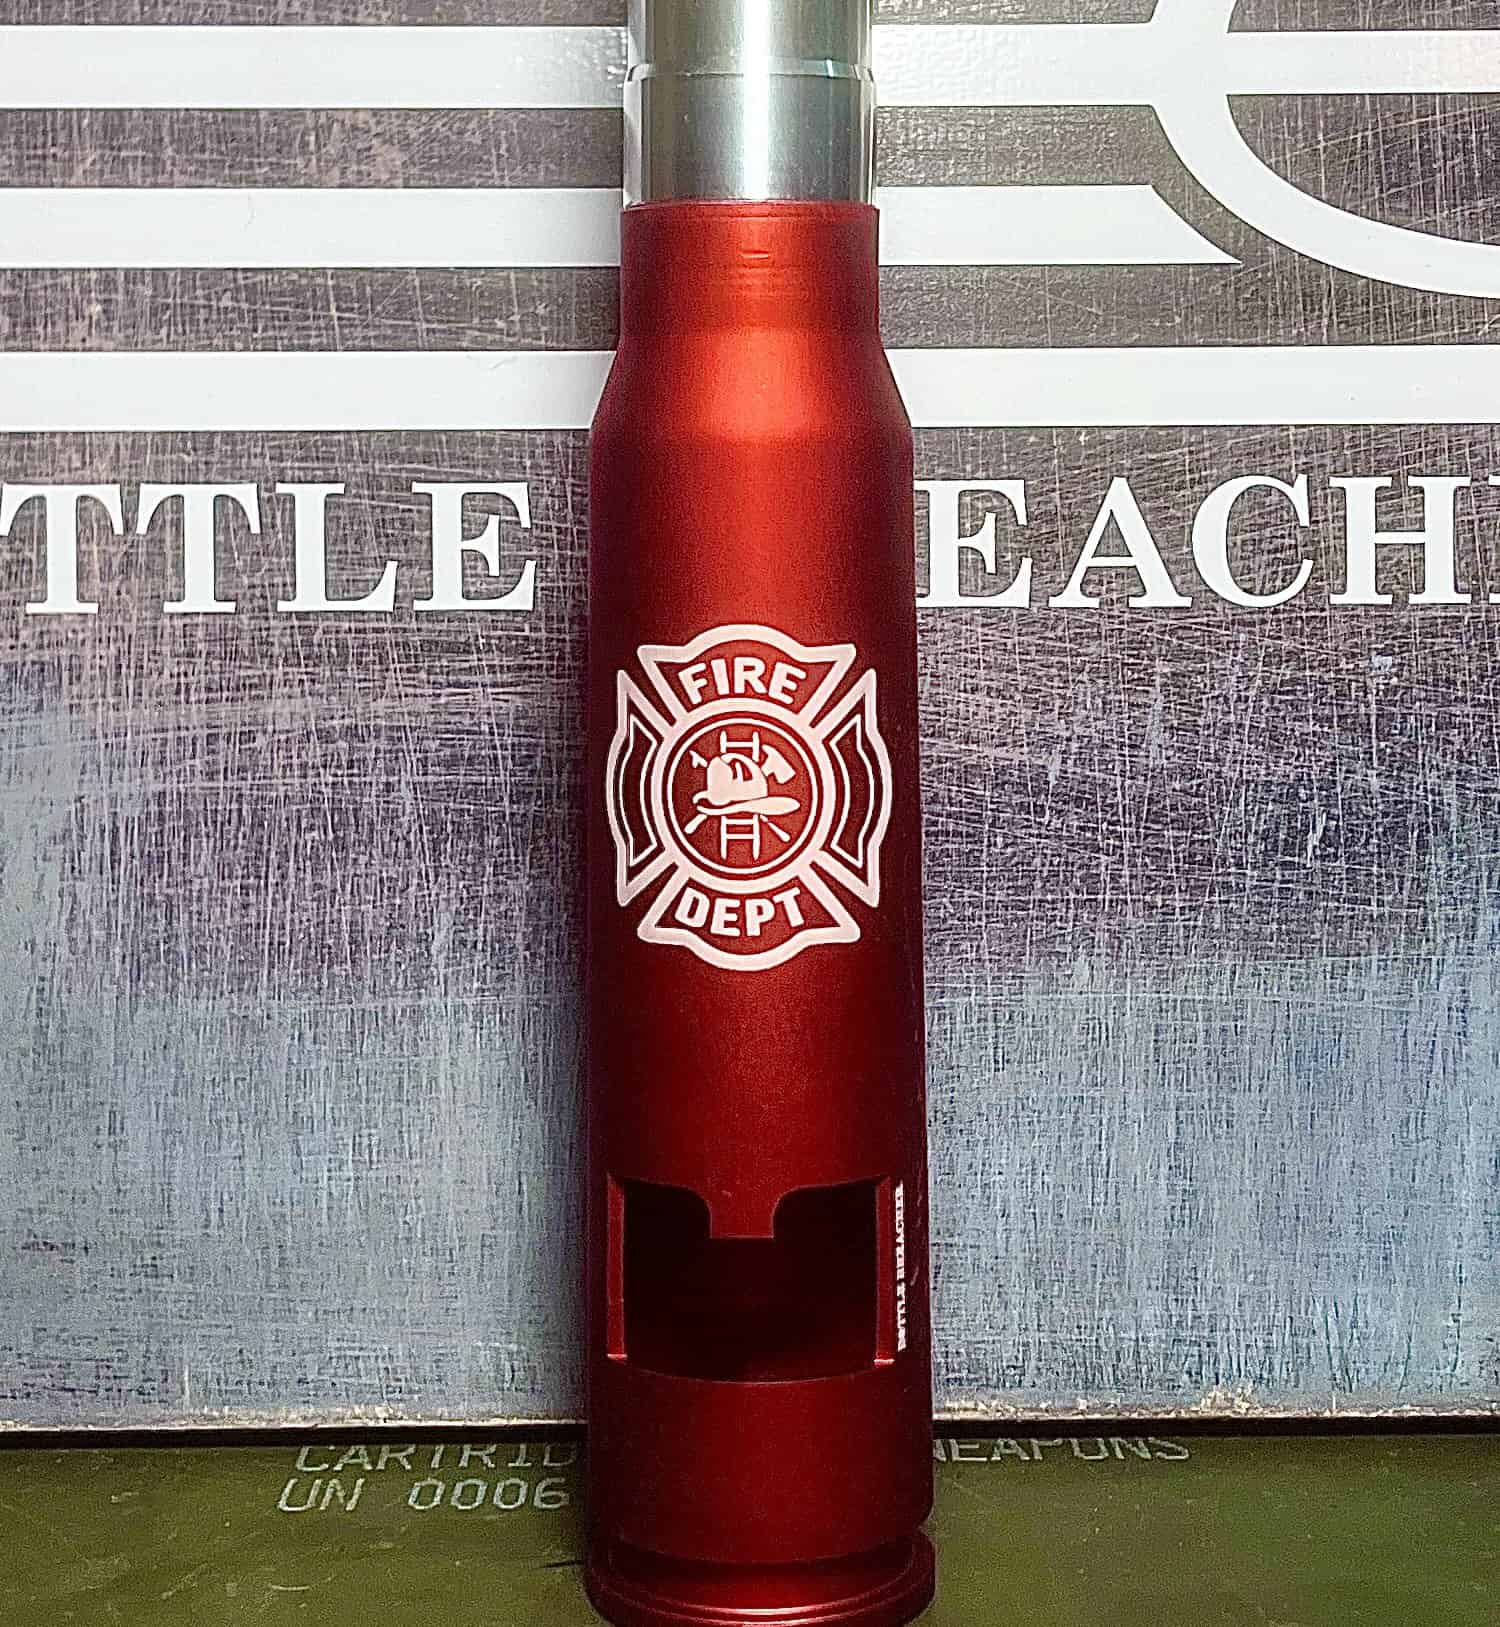 Firefighter 20mm Bottle Opener - Bottle Breacher